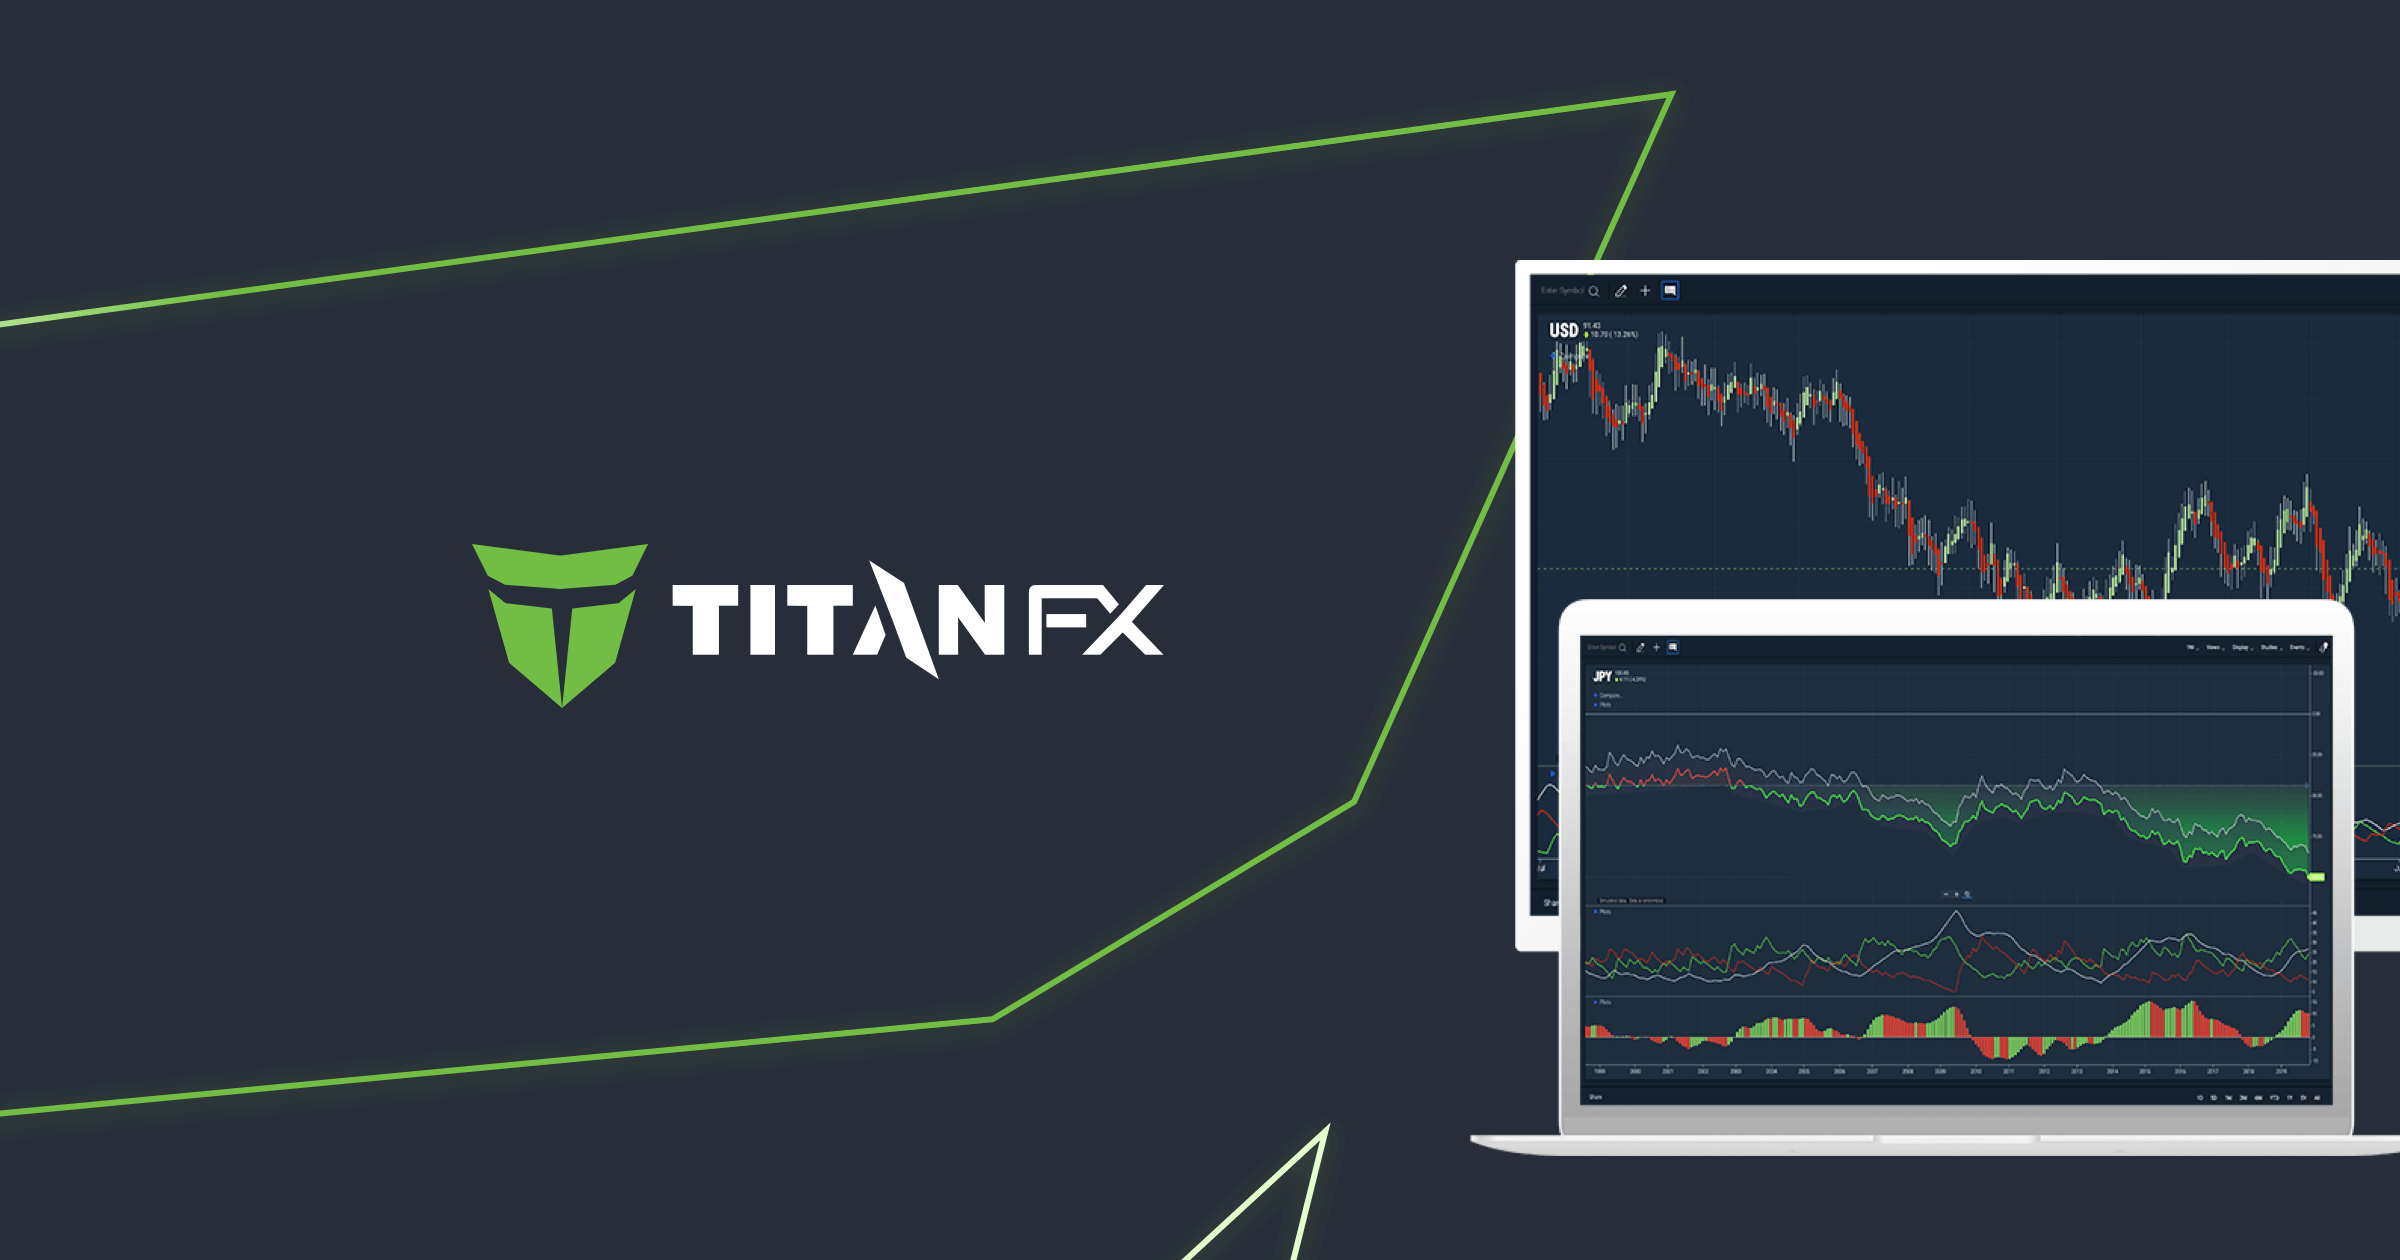 تيتان إف إكس Titan FX تحقق حجم تداول عملات مشفرة بقيمة 2 مليار دولار في يوم واحد